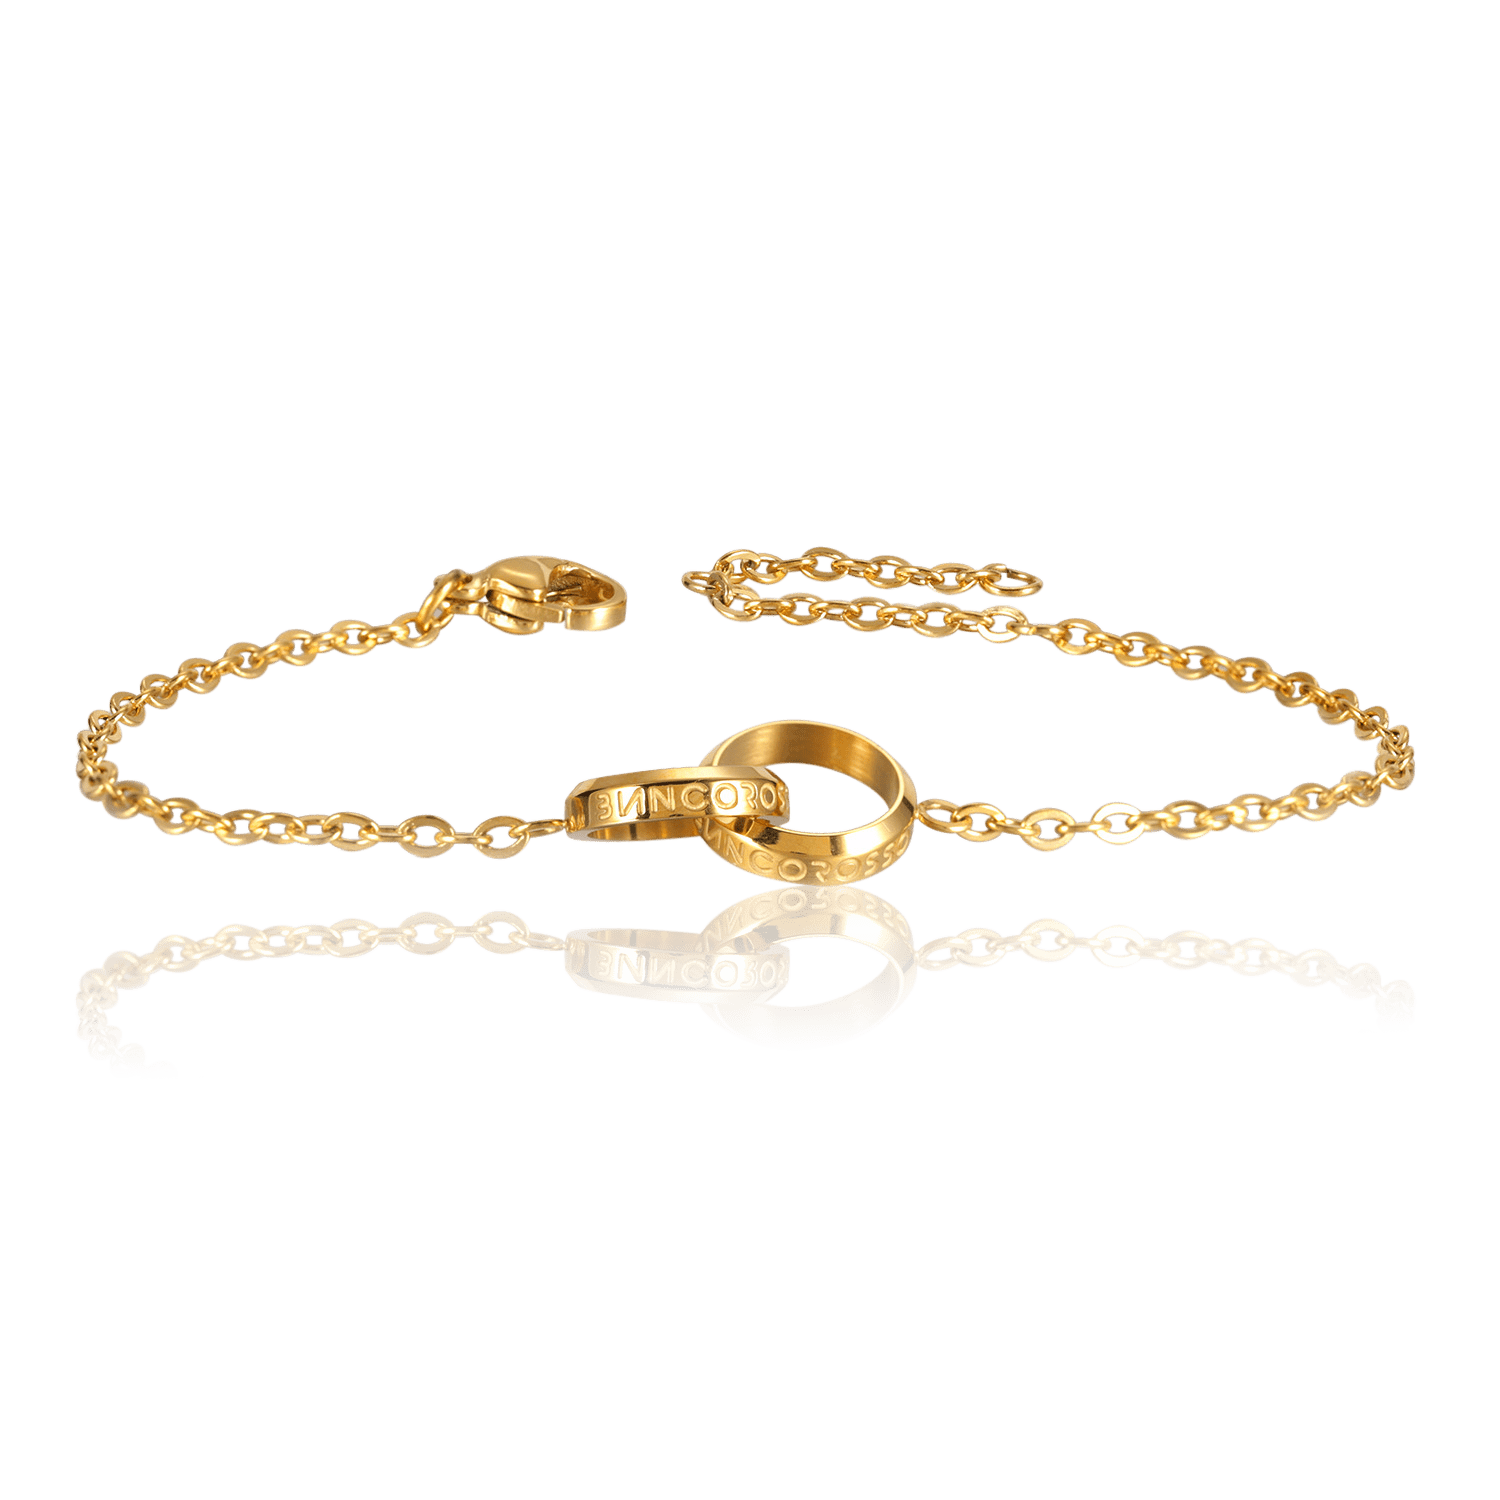 bianco rosso Bracelets To My Wife - Eternity Bracelet cyprus greece jewelry gift free shipping europe worldwide